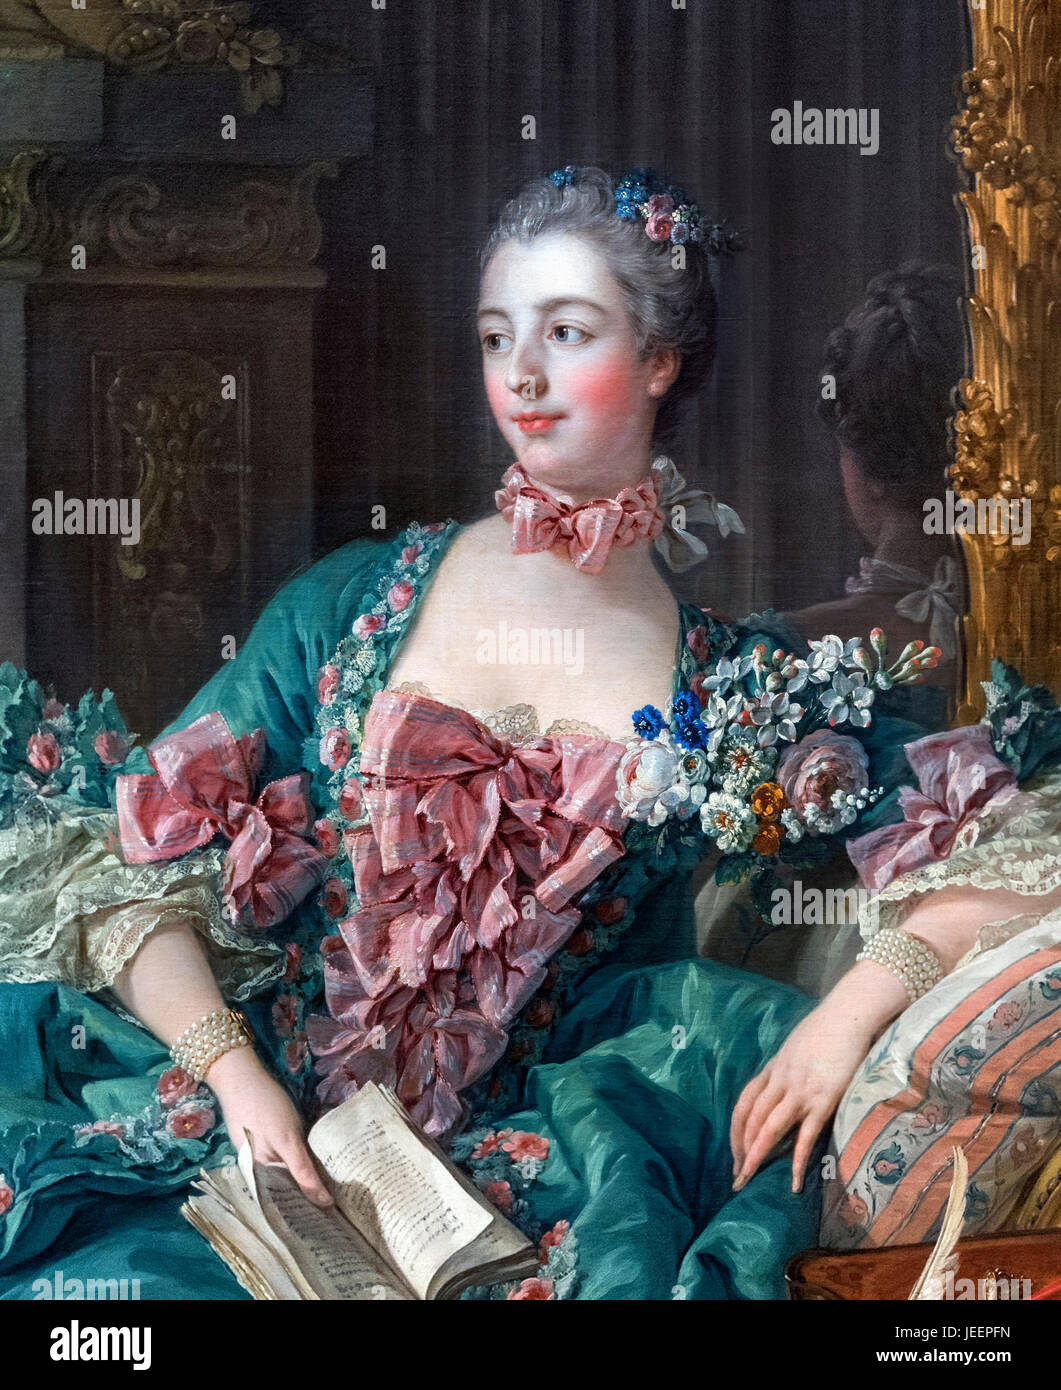 Madame de Pompadour. Porträt des Jeanne Antoinette Poisson, Marquise de Pompadour (1721-1764) von Francois Boucher, Öl auf Leinwand, 1756. Madame de Pompadour war ein Mitglied des französischen Hofes und die offiziellen Chef Herrin von Louis XV von 1745 bis 1751. Stockfoto